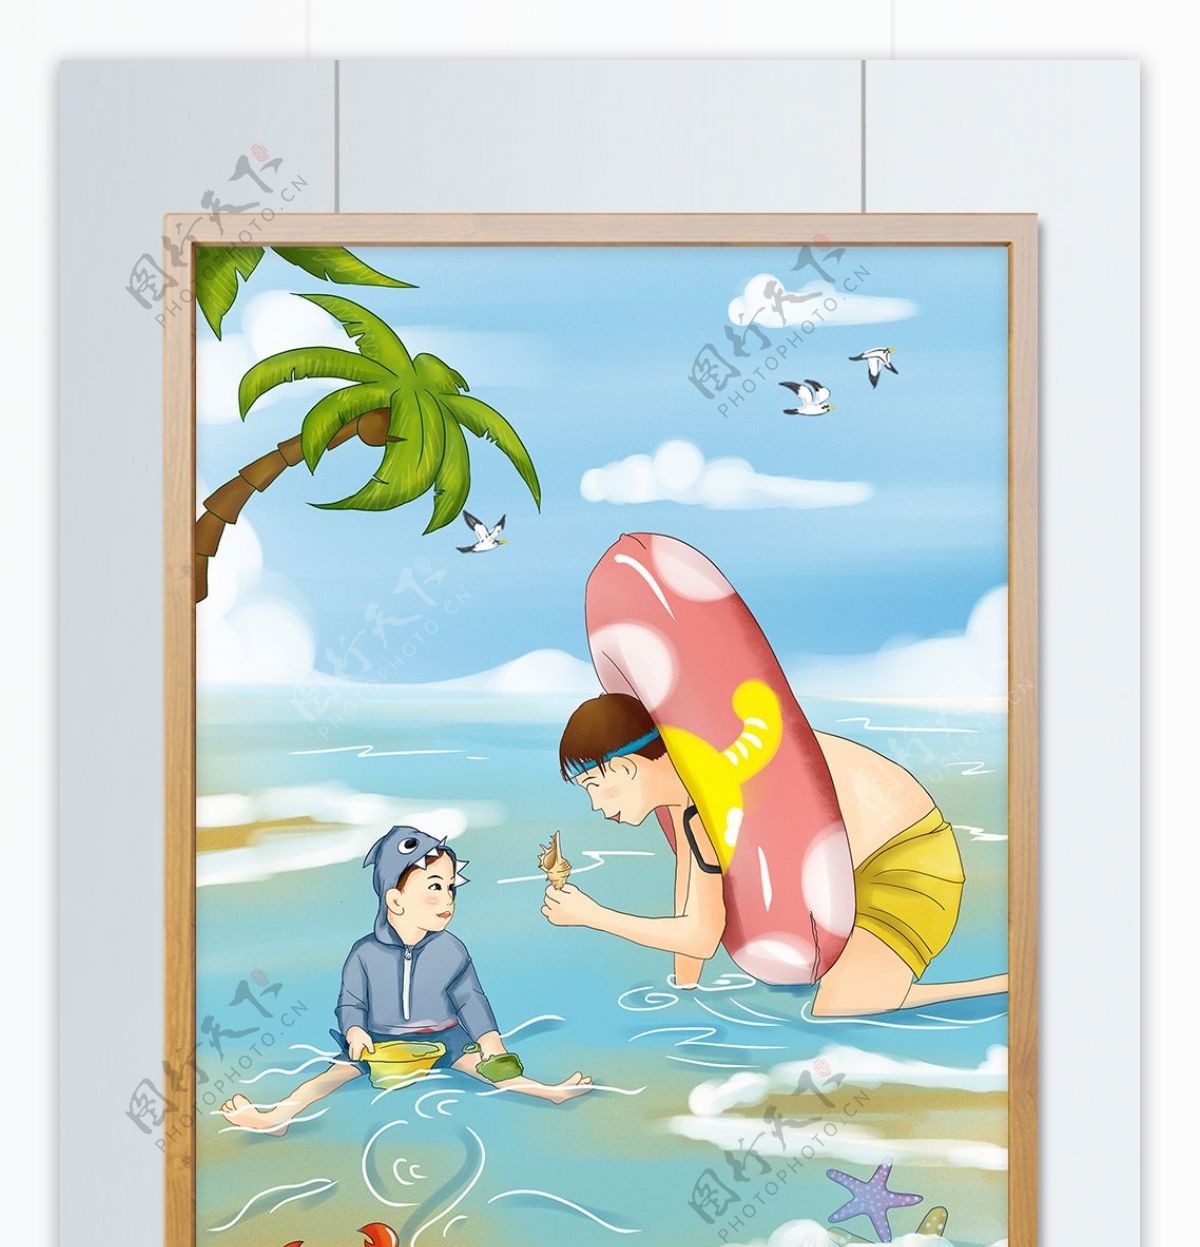 原创立夏插画之两兄弟在海边玩耍